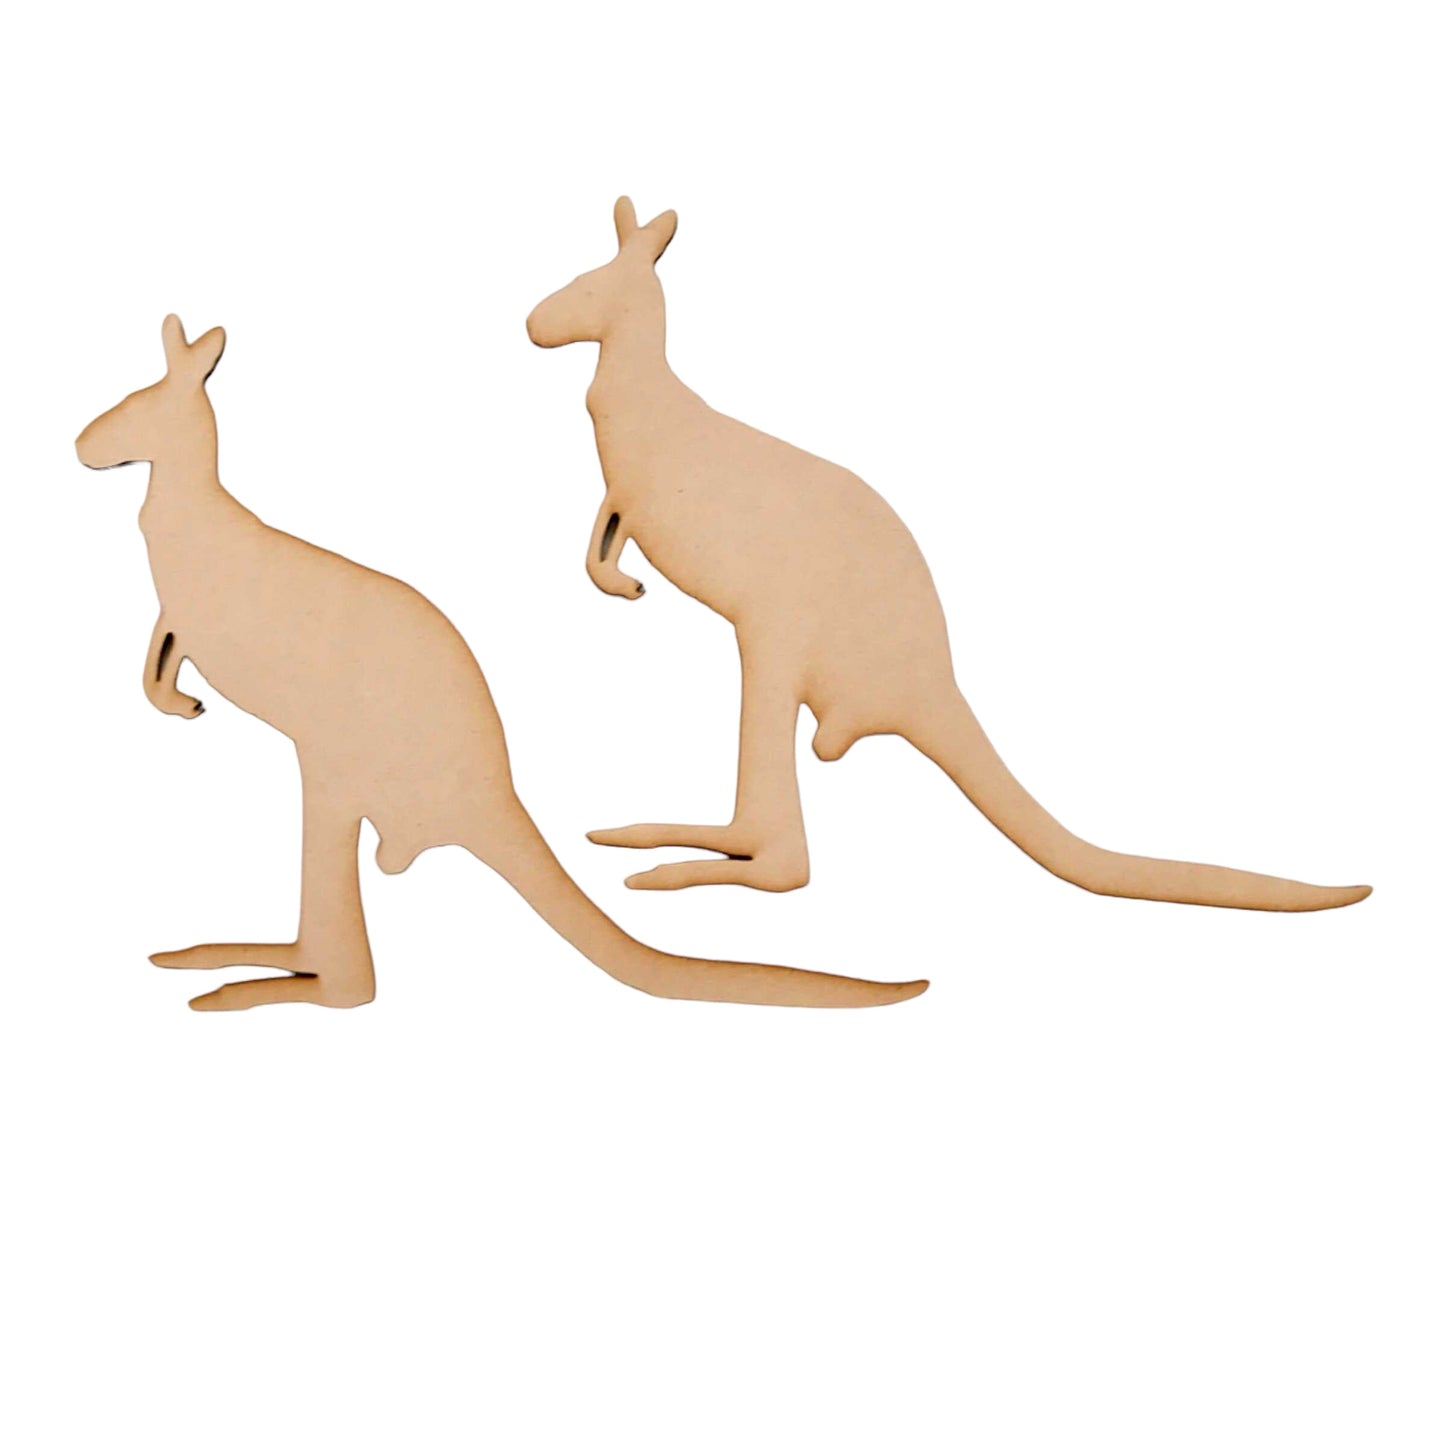 Kangaroo Set of 2 MDF DIY Raw Cut Out Art Craft Decor